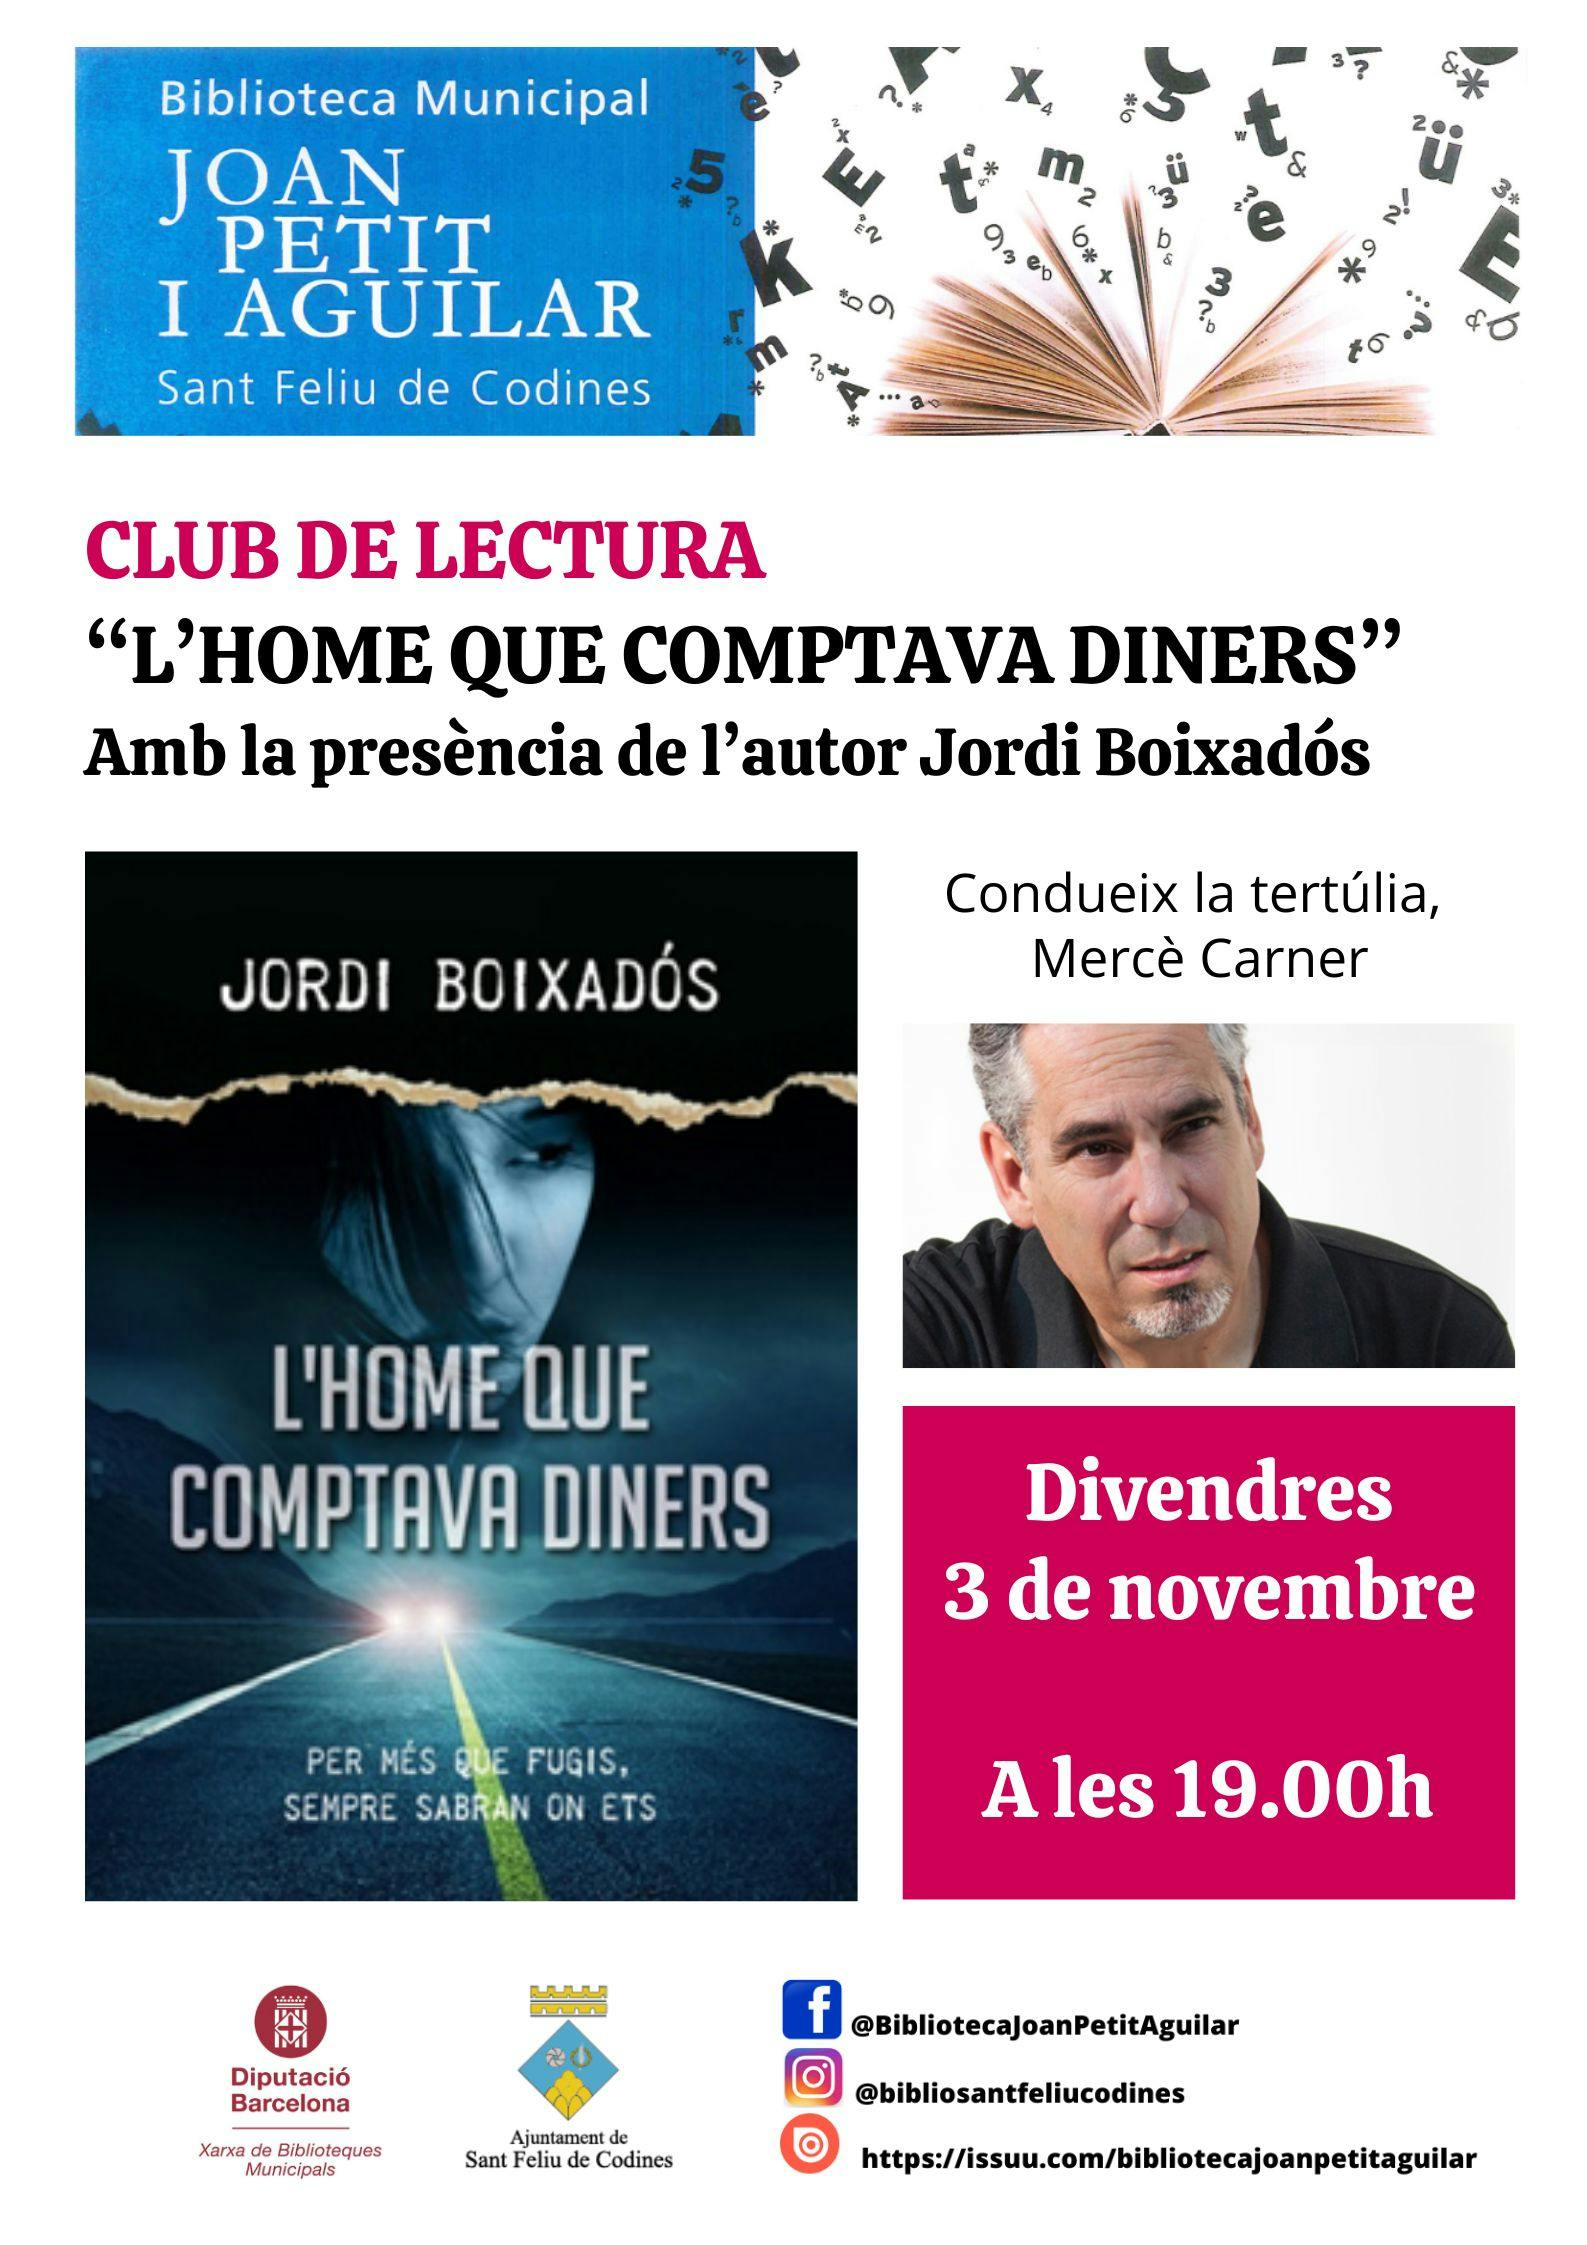 Club de lectura per a adults amb l'autor Jordi Boixadós, de l'obra "L'Home que comptava diners"